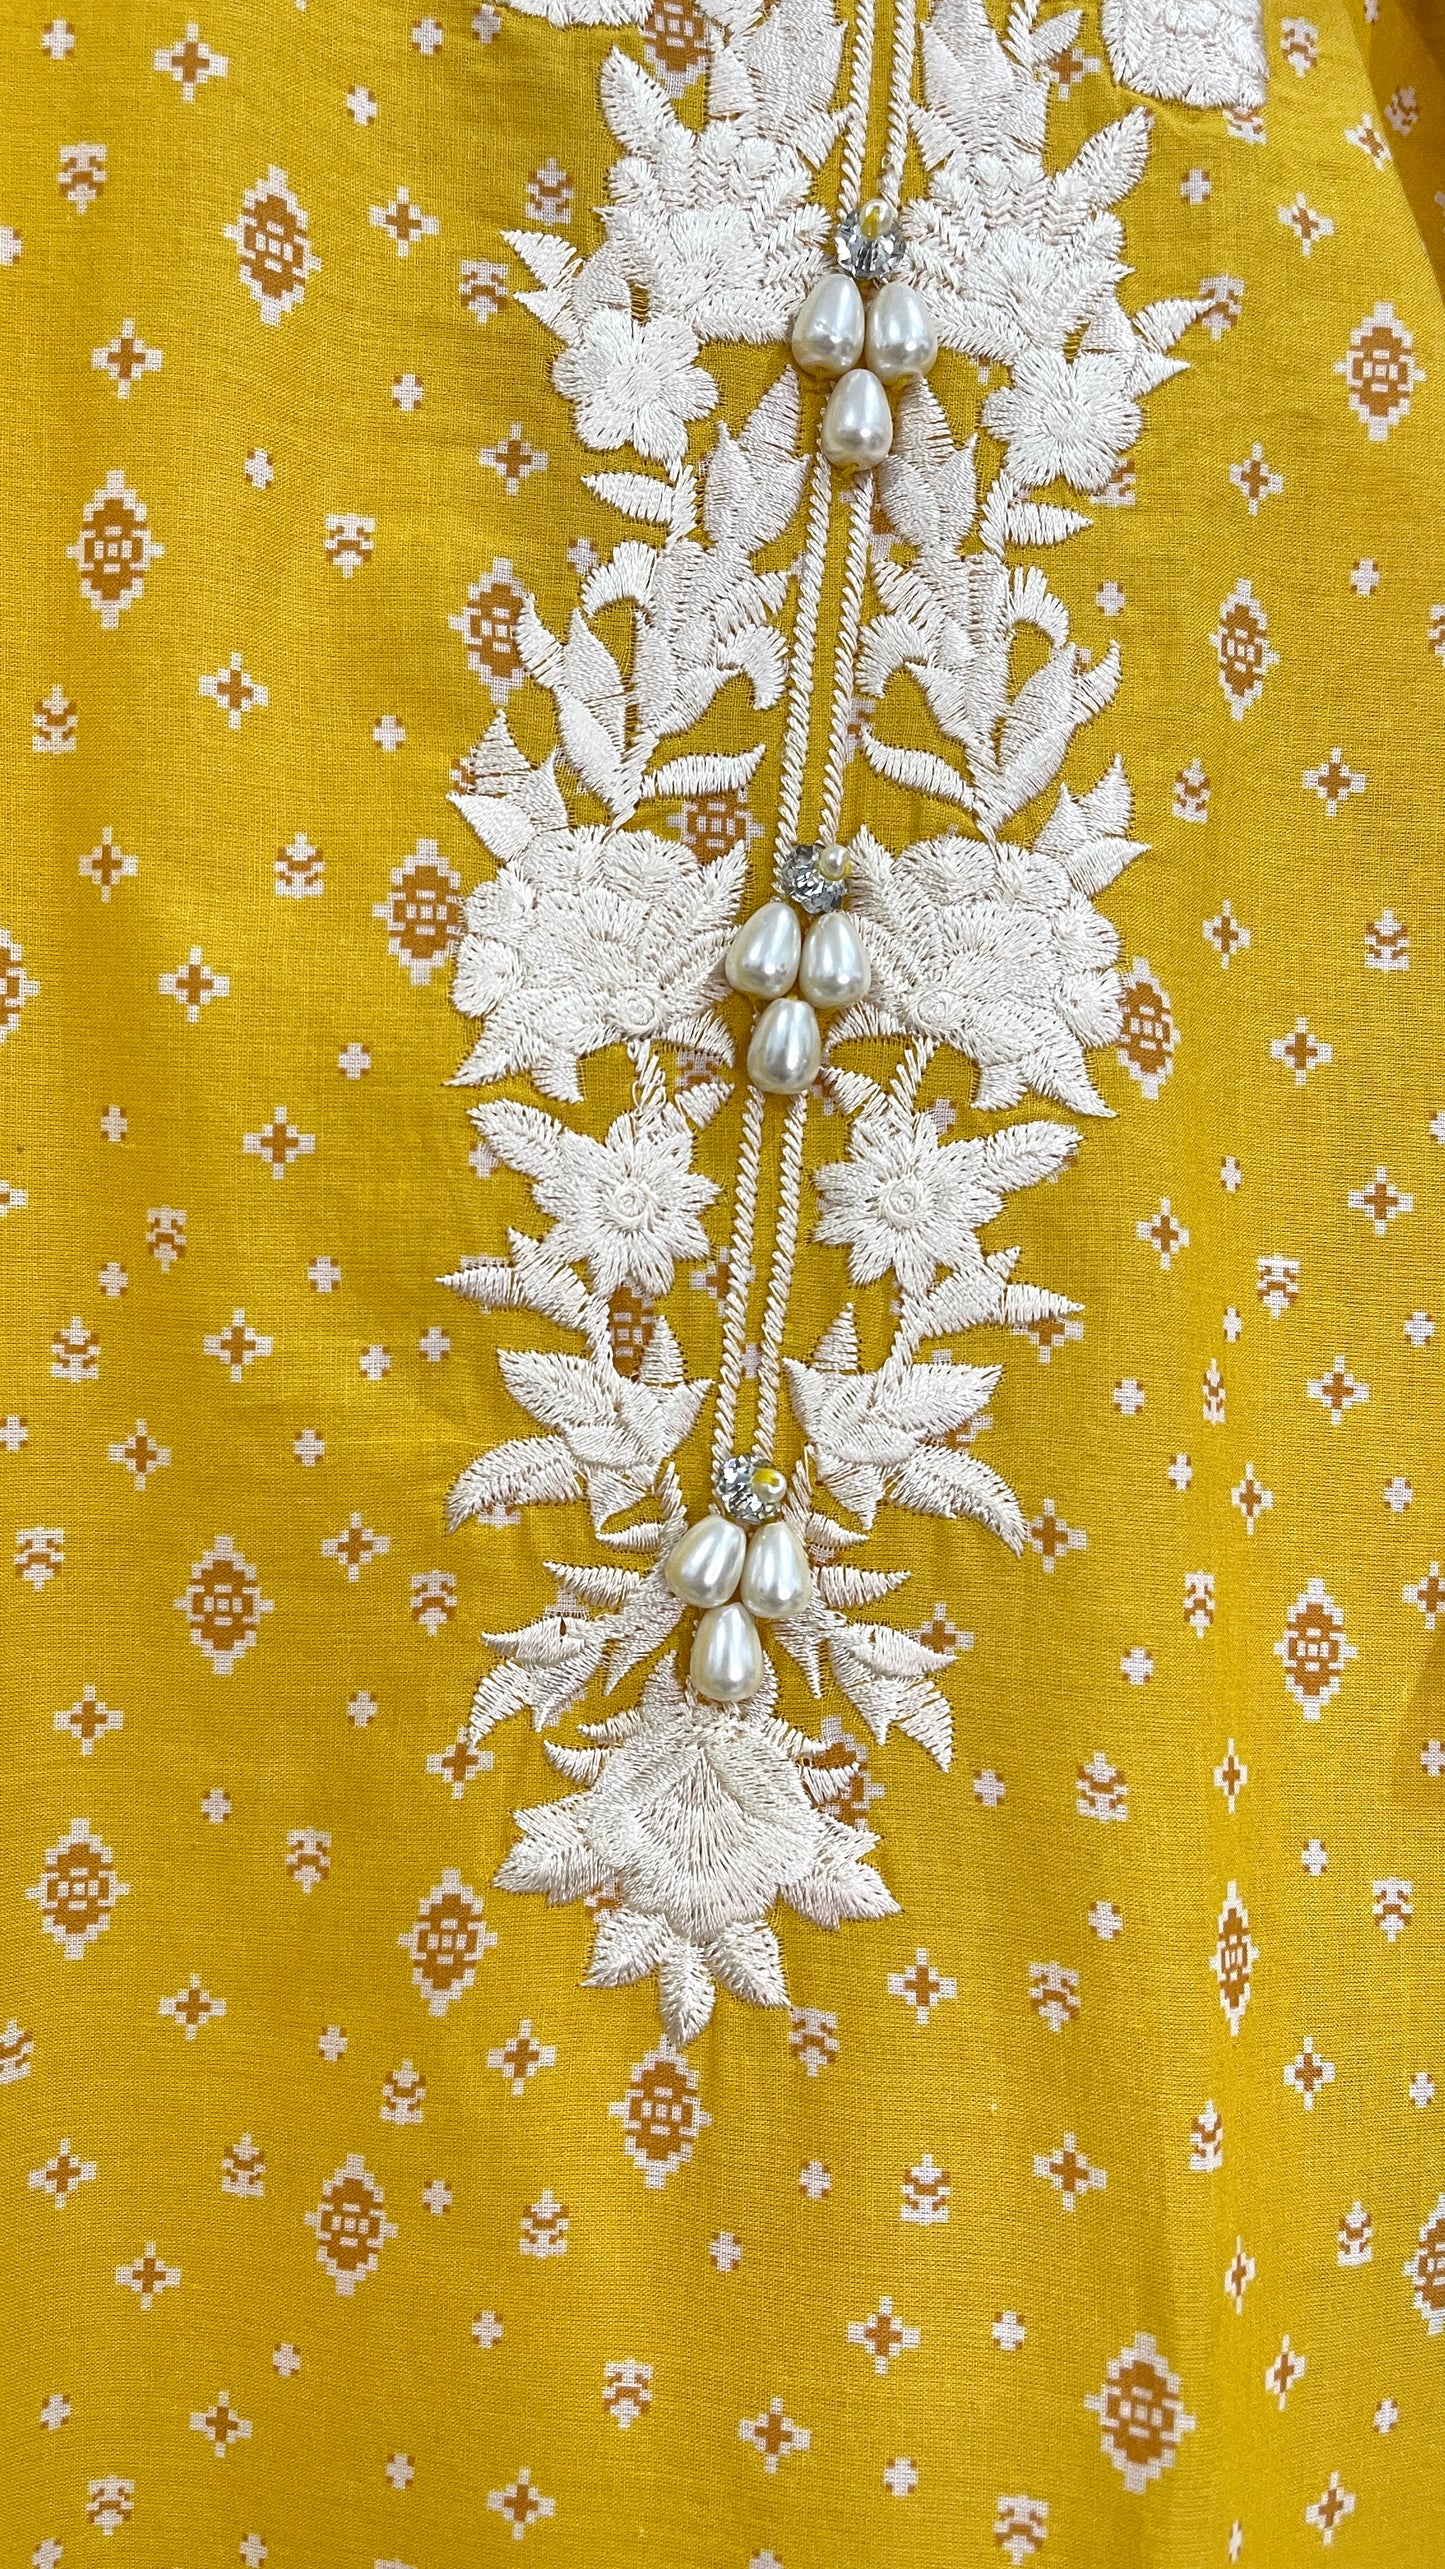 Original Agha Noor 3 Piece Yellow Cotton Suit